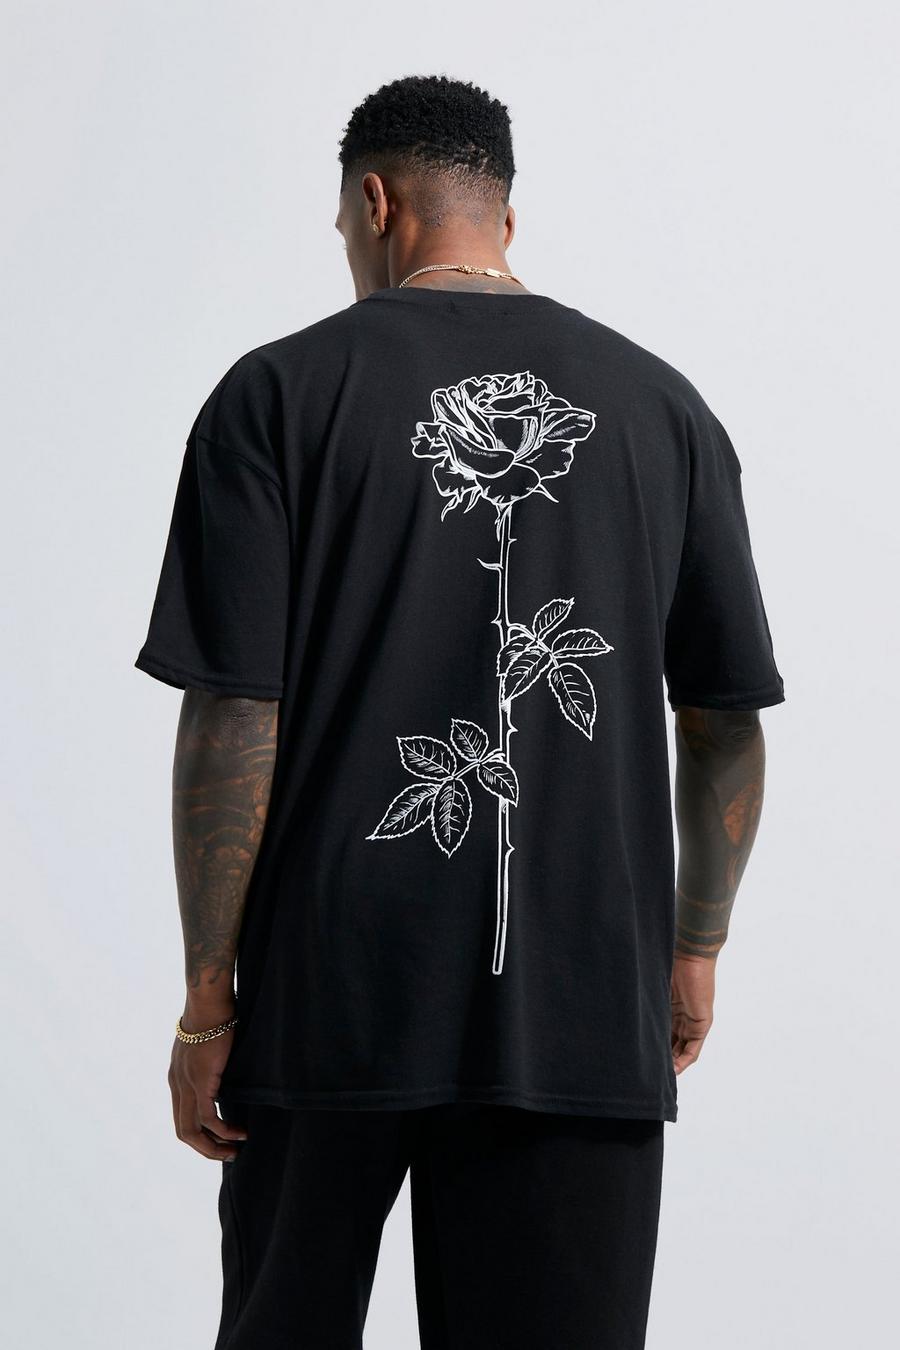 שחור negro טישרט עם הדפס גבעול ורד מאויר בקו